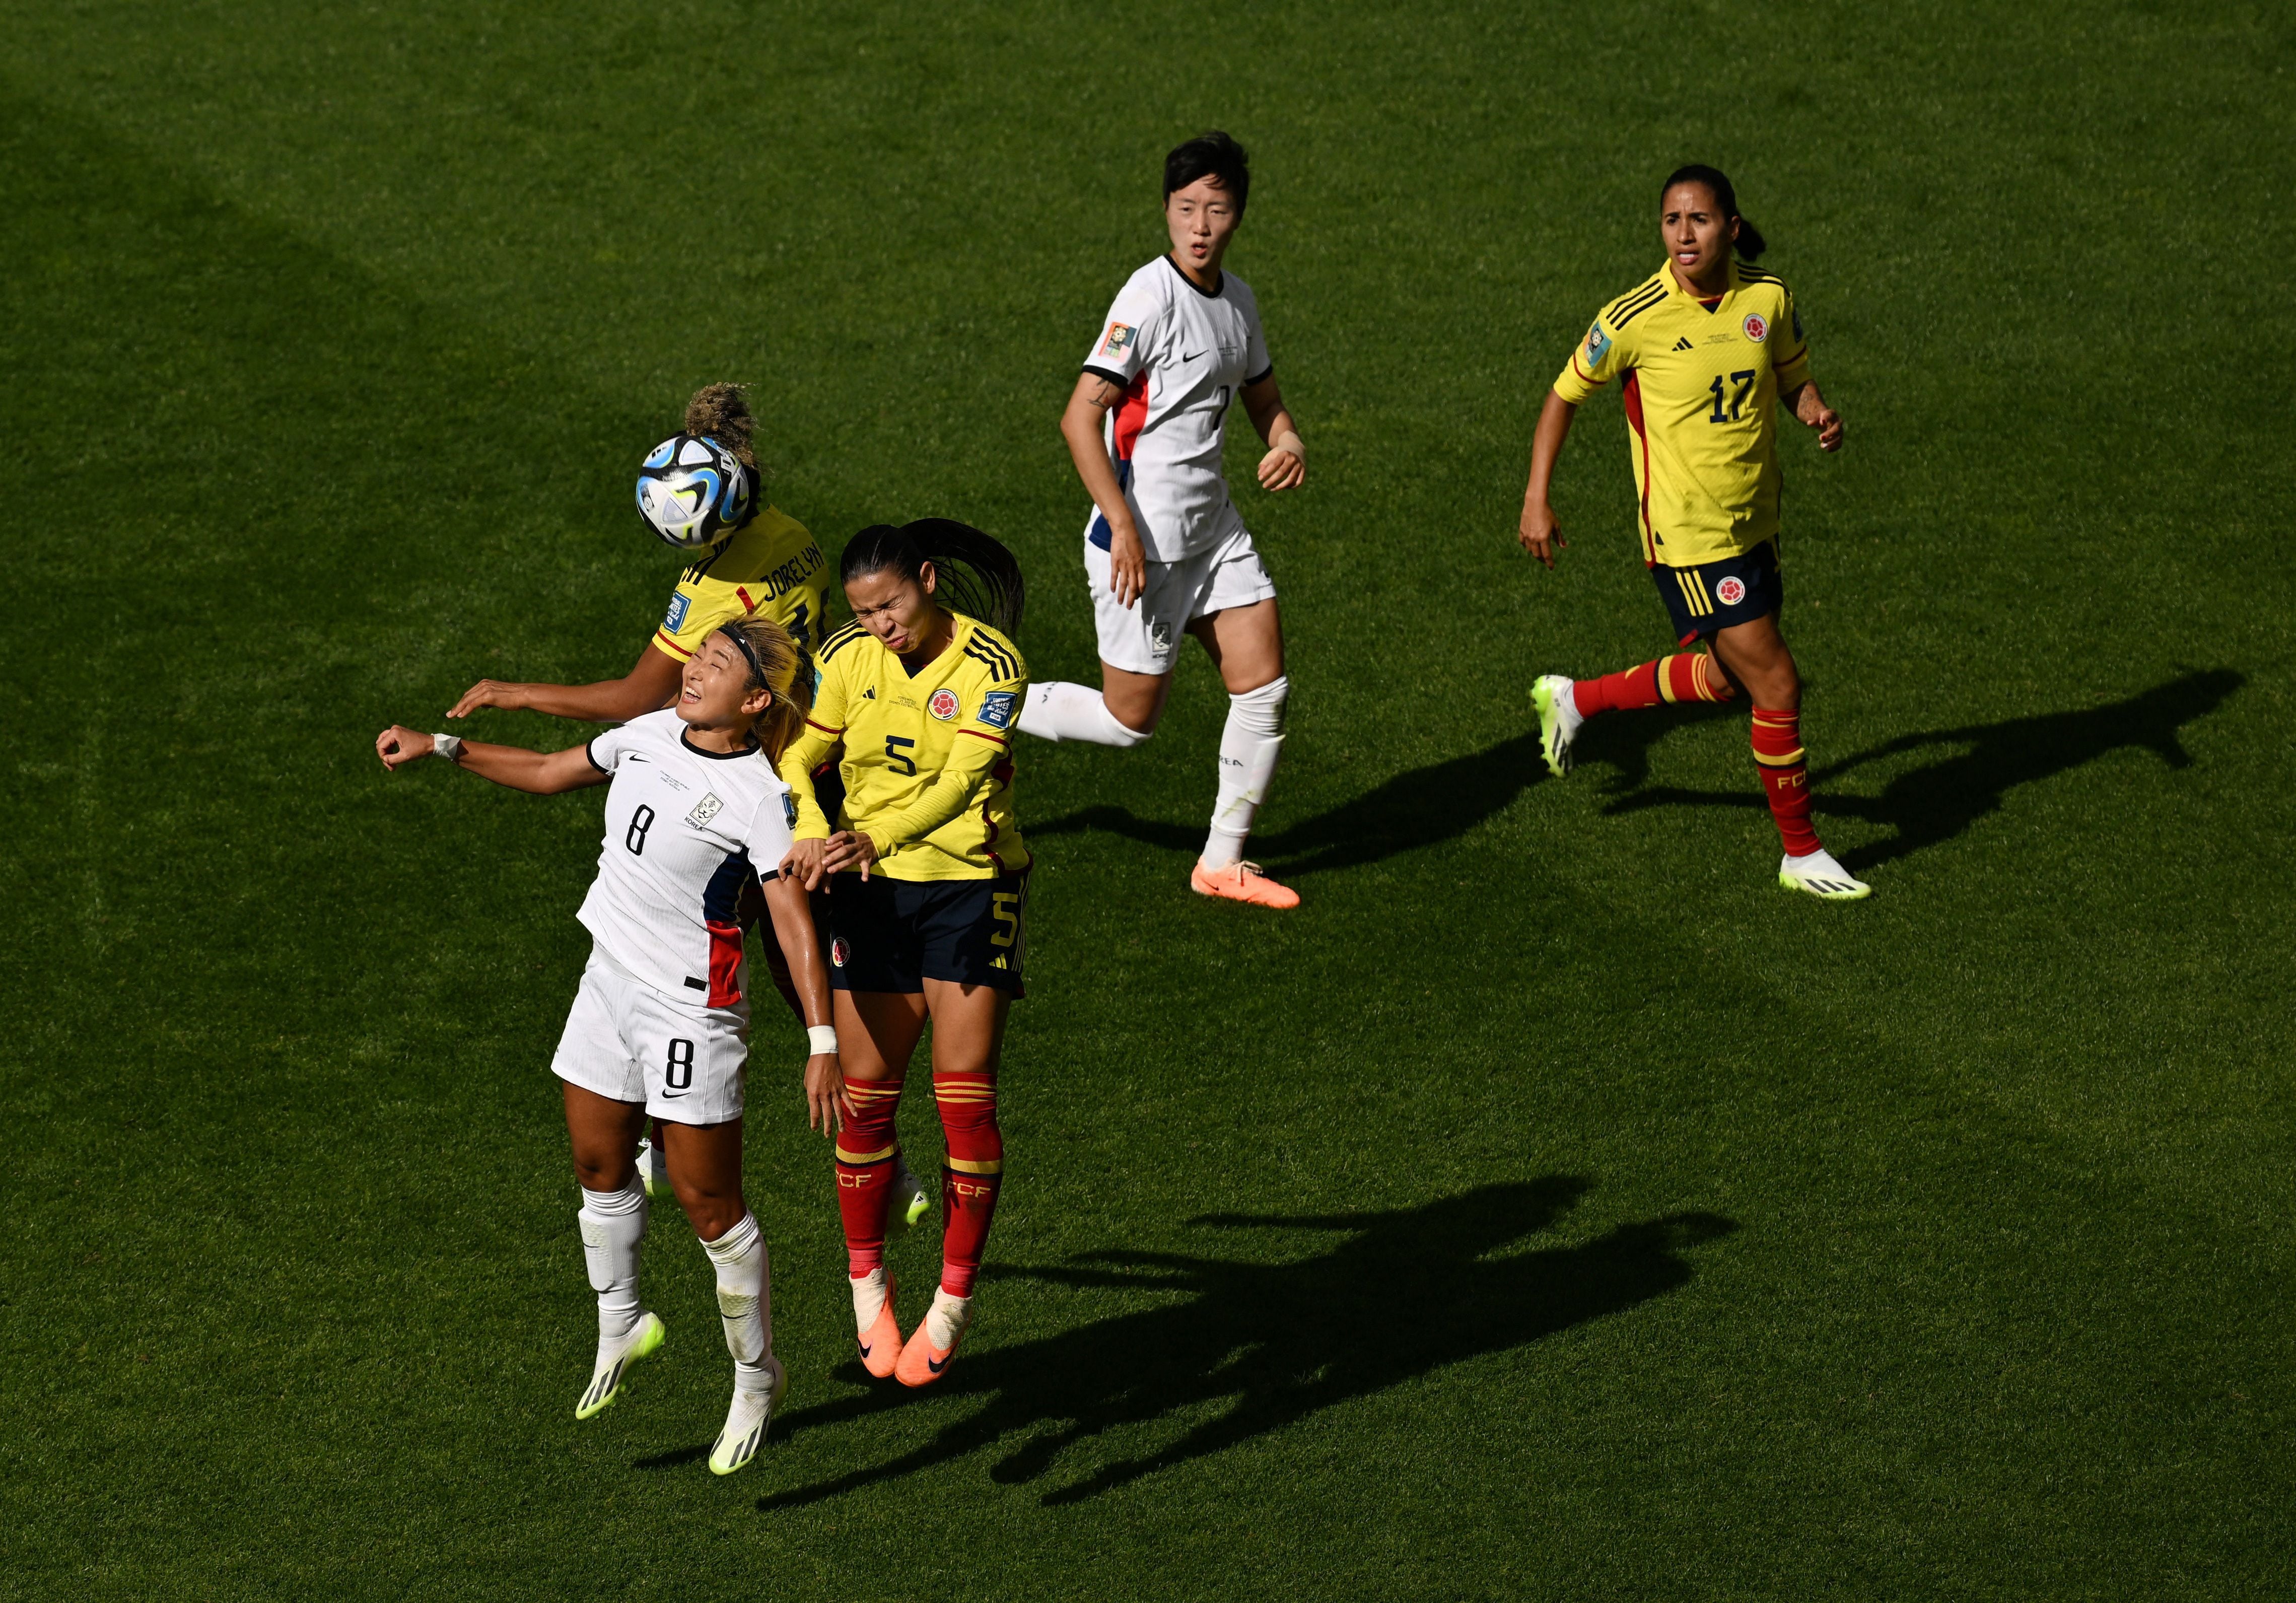 La selección Colombia hizo un gran partido frente a Corea del Sur y se llevó el triunfo por 2-0 en el Mundial Femenino. REUTERS/Jaimi Joy